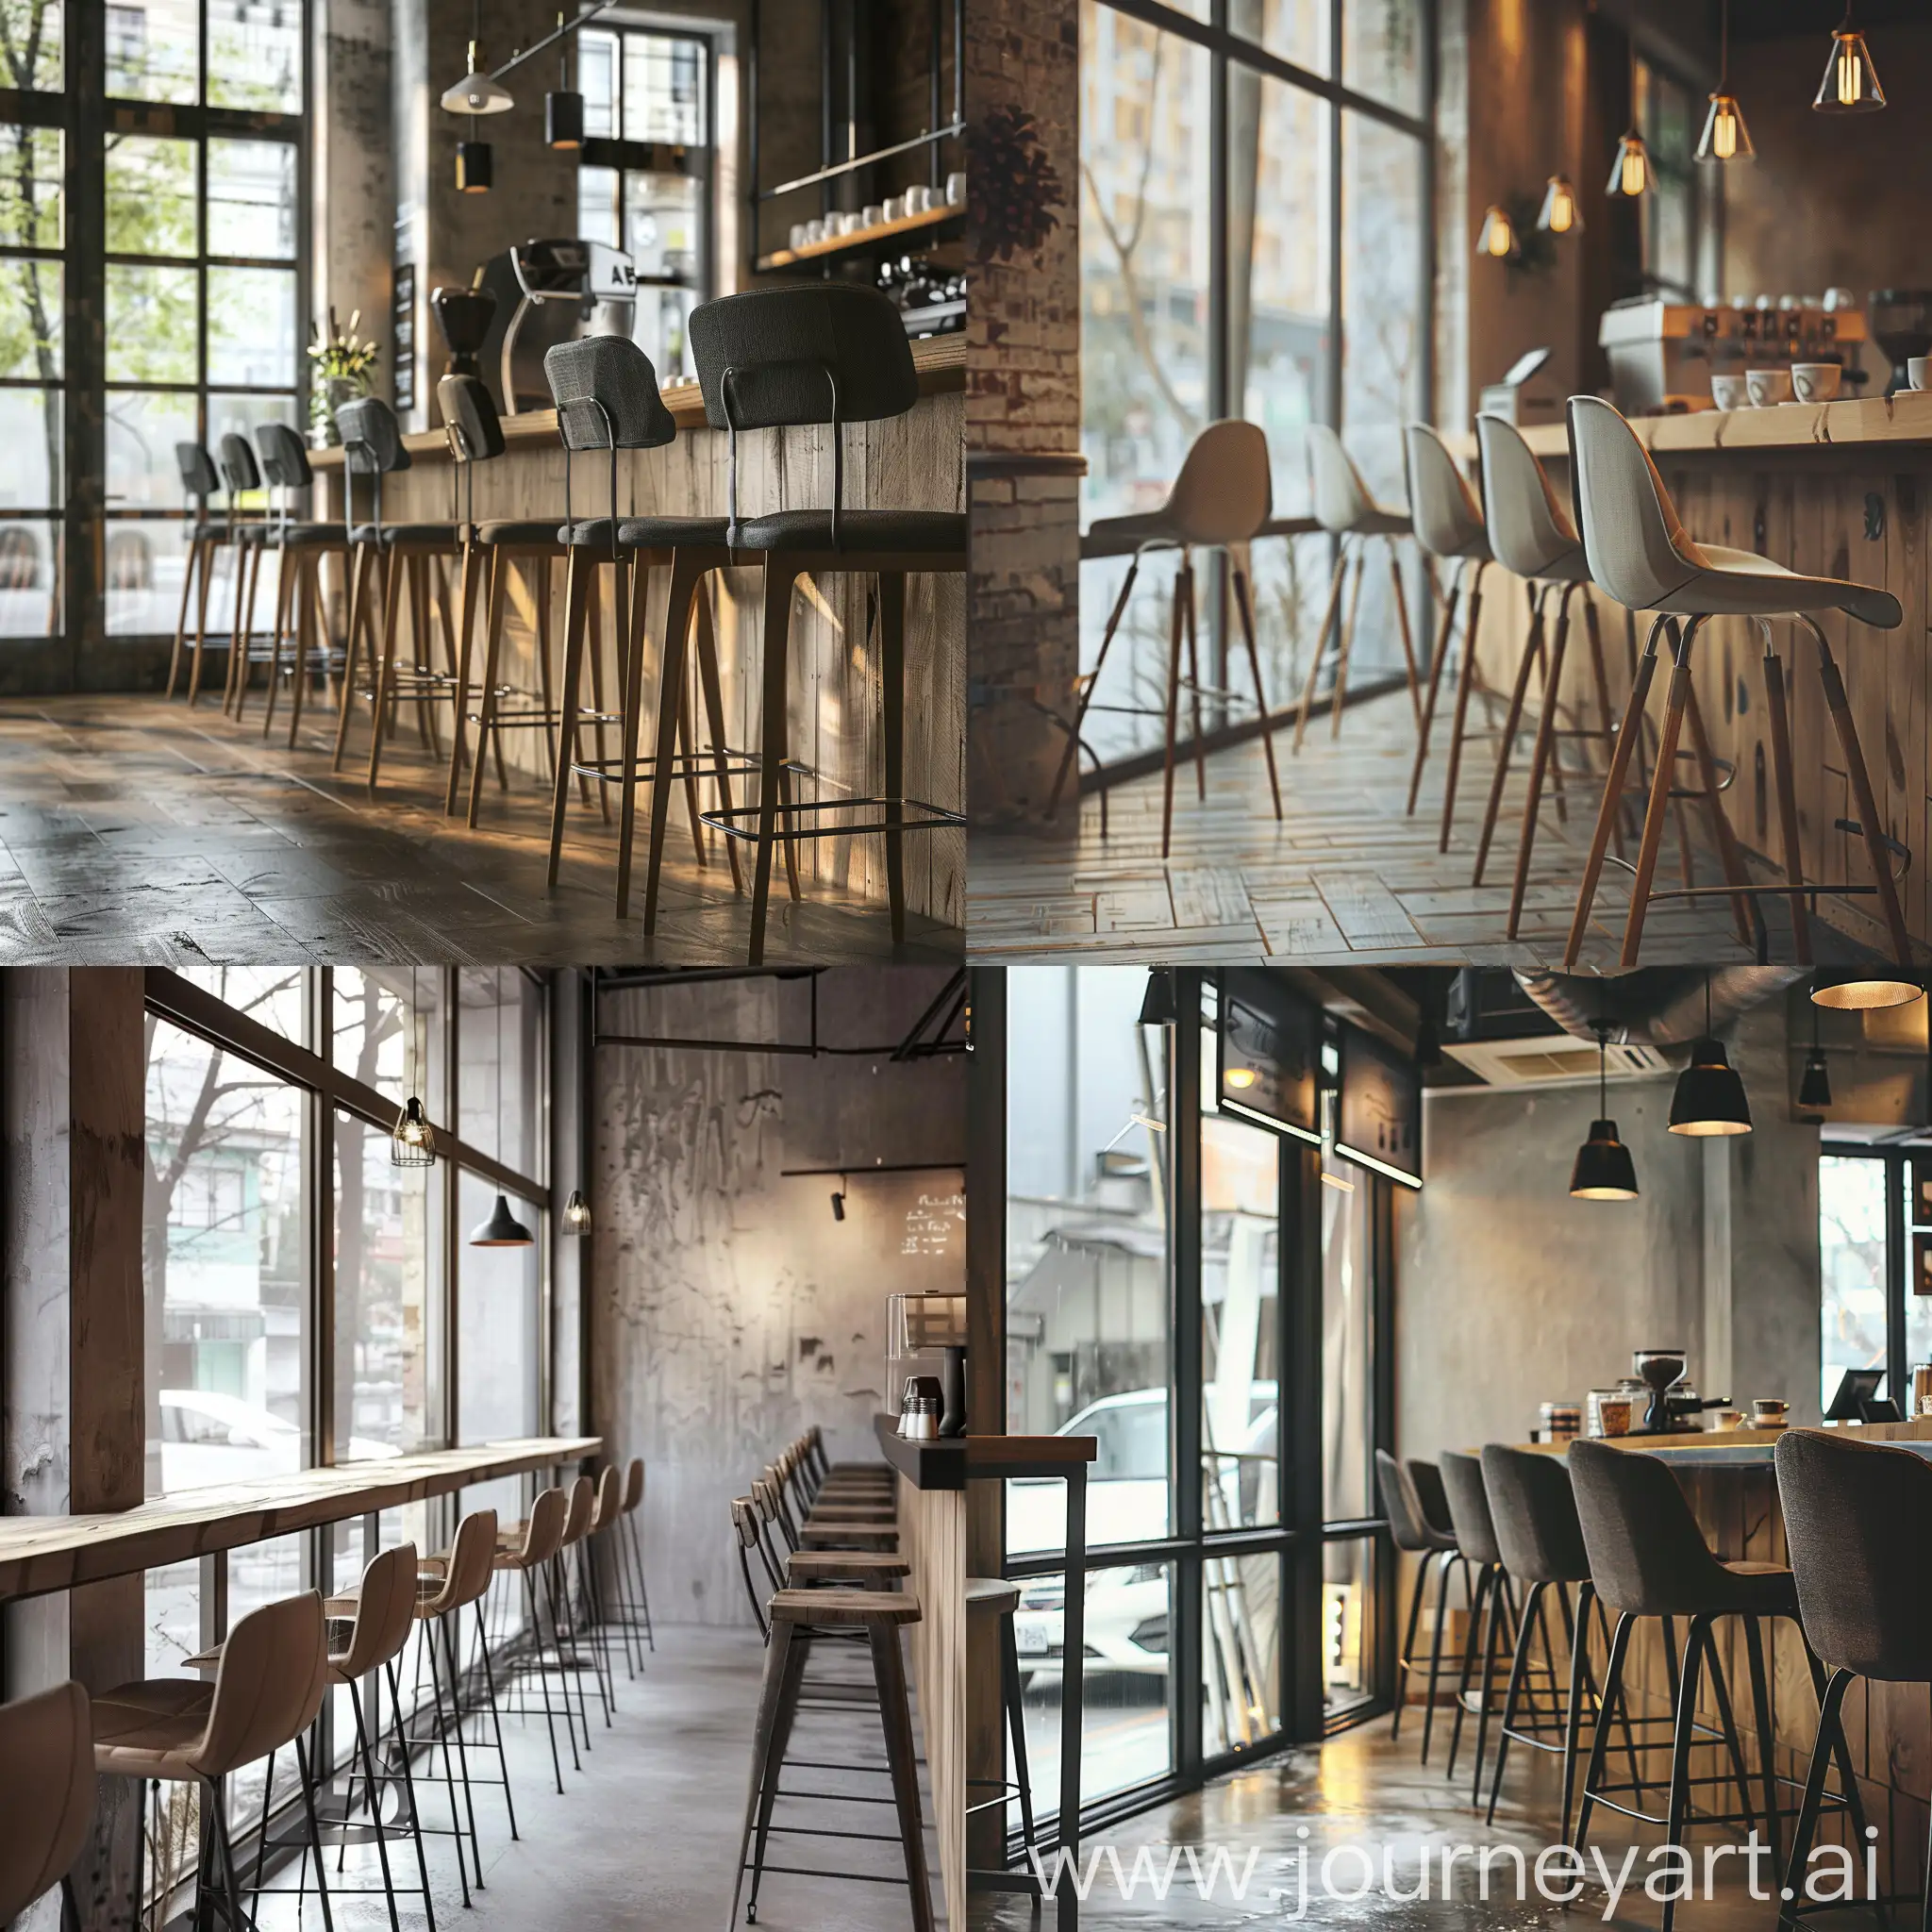 设计一个工业网红风的咖啡店，可以整体质感水泥灰肌理搭配原木色，可有侘寂风的摆件。有一排面向窗外高椅